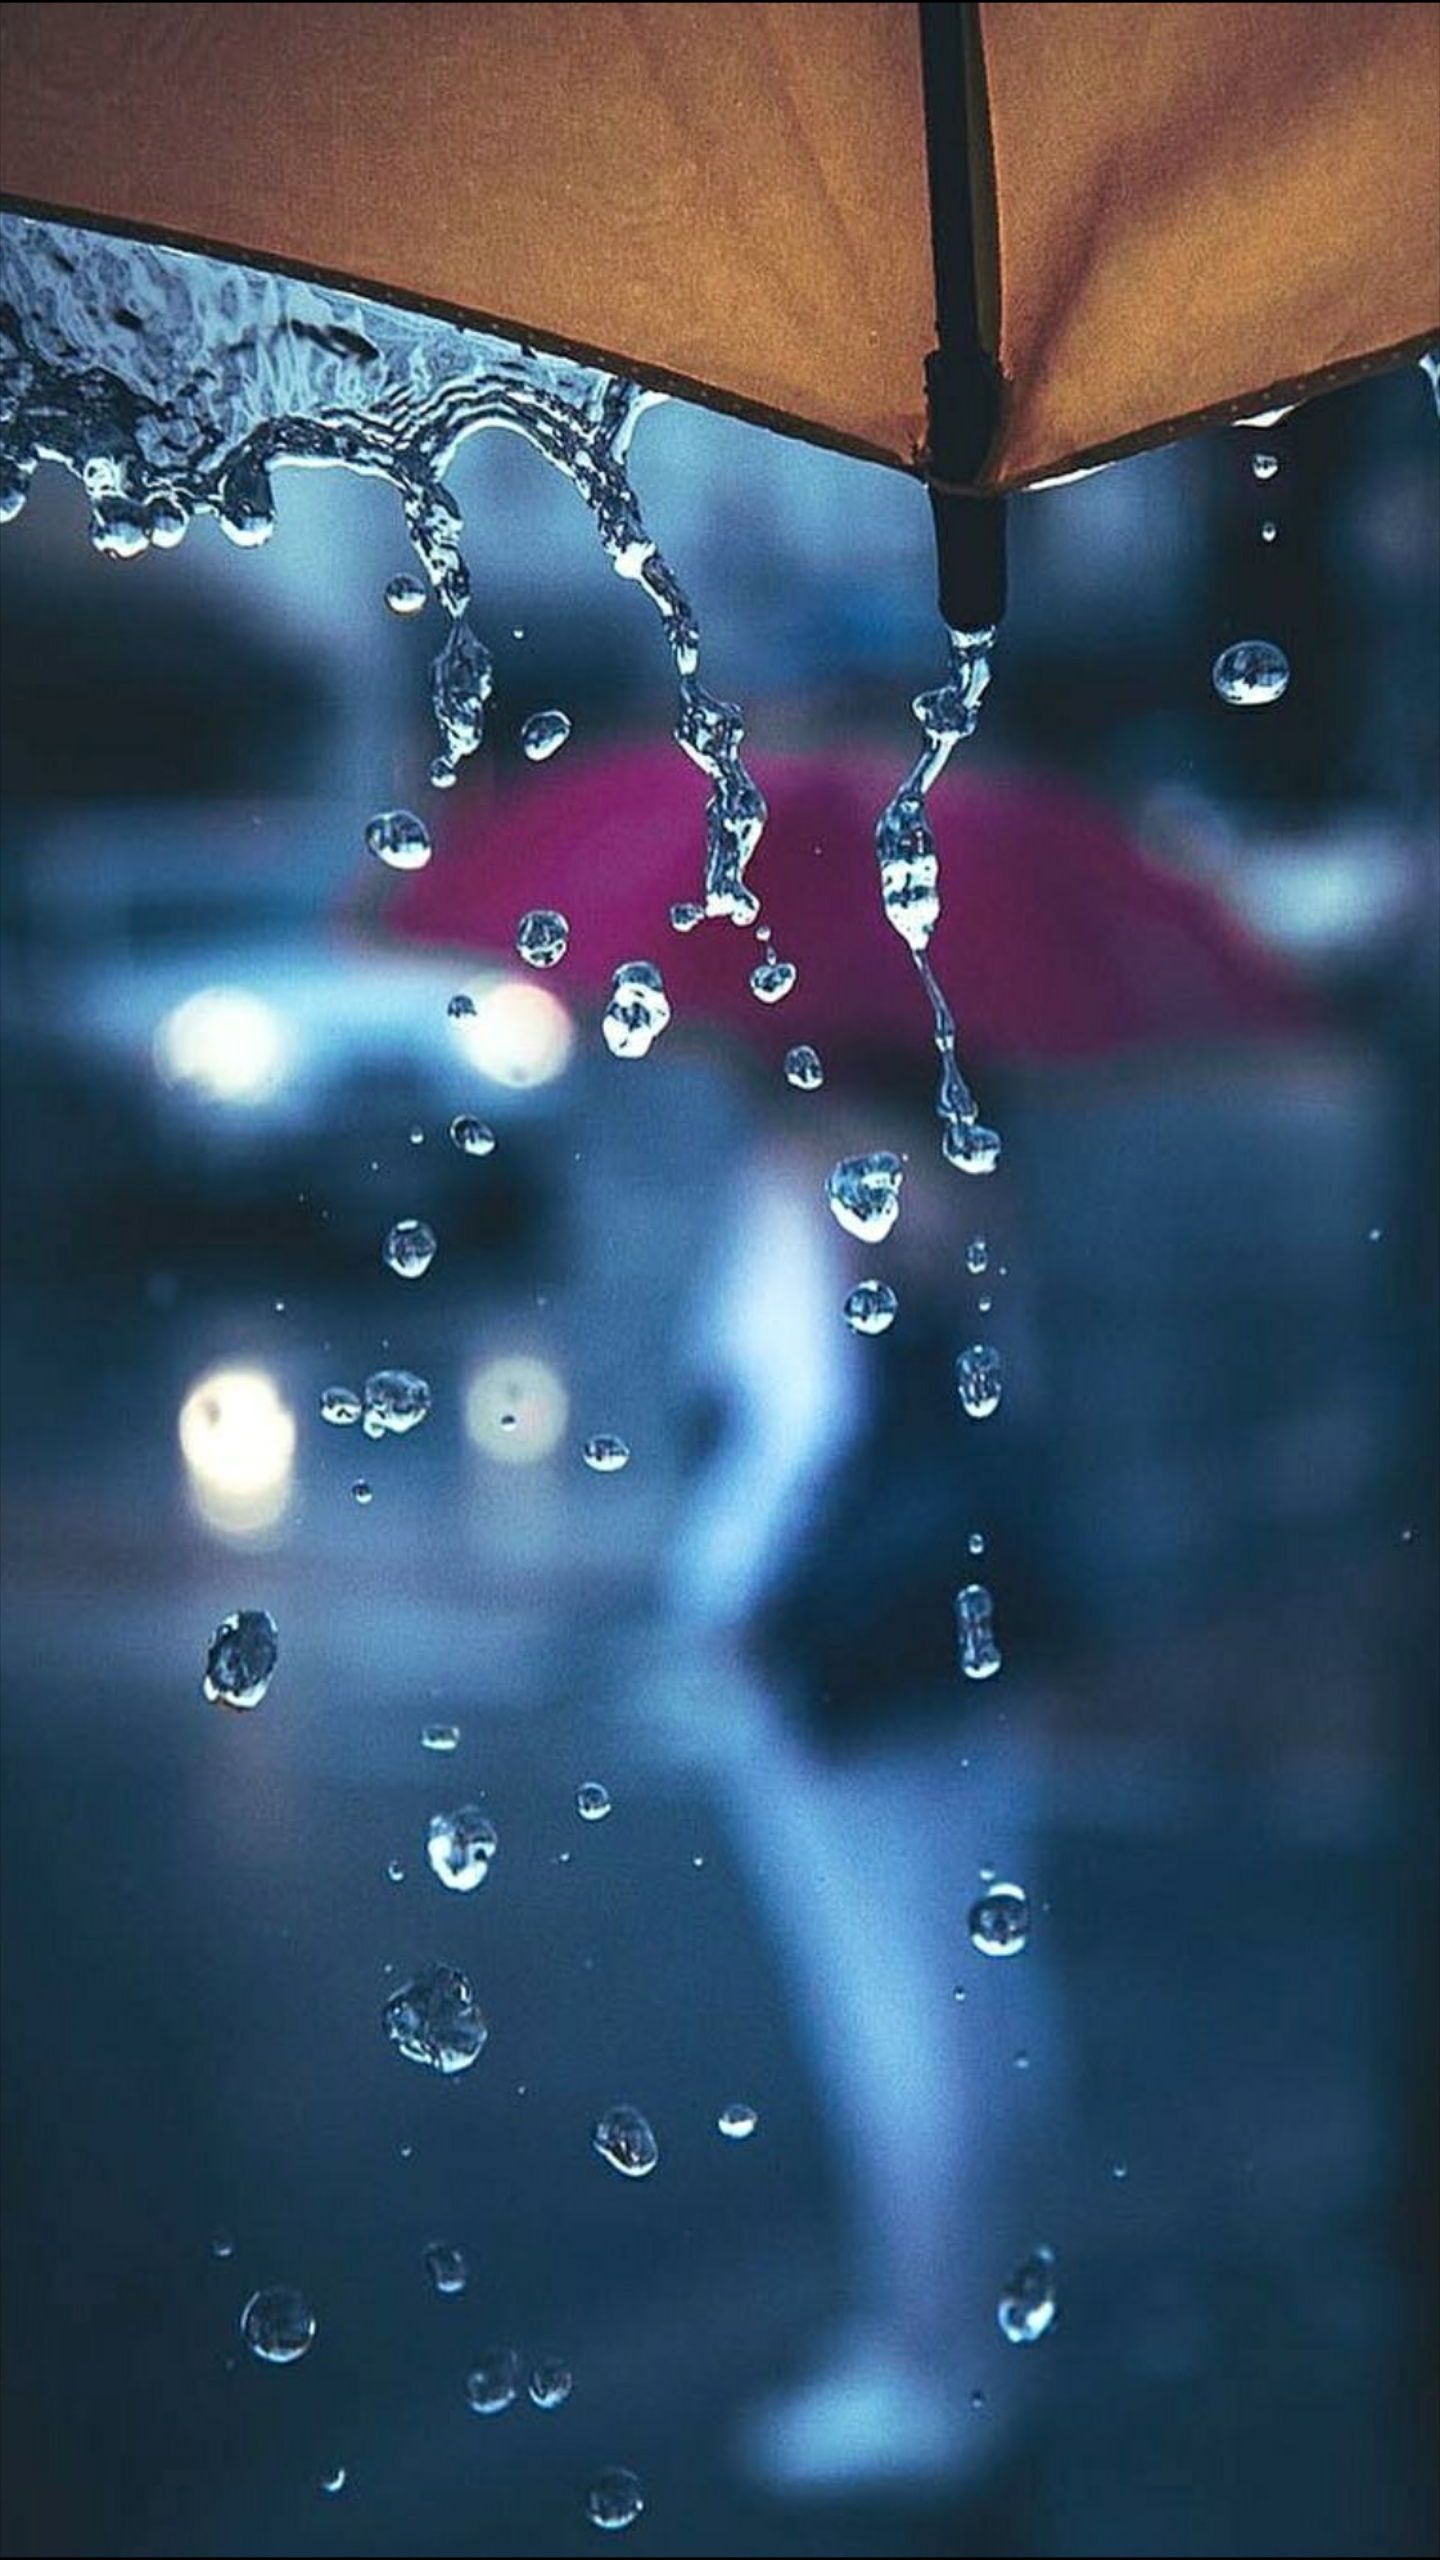 Dew drop photography, Rain wallpaper.com